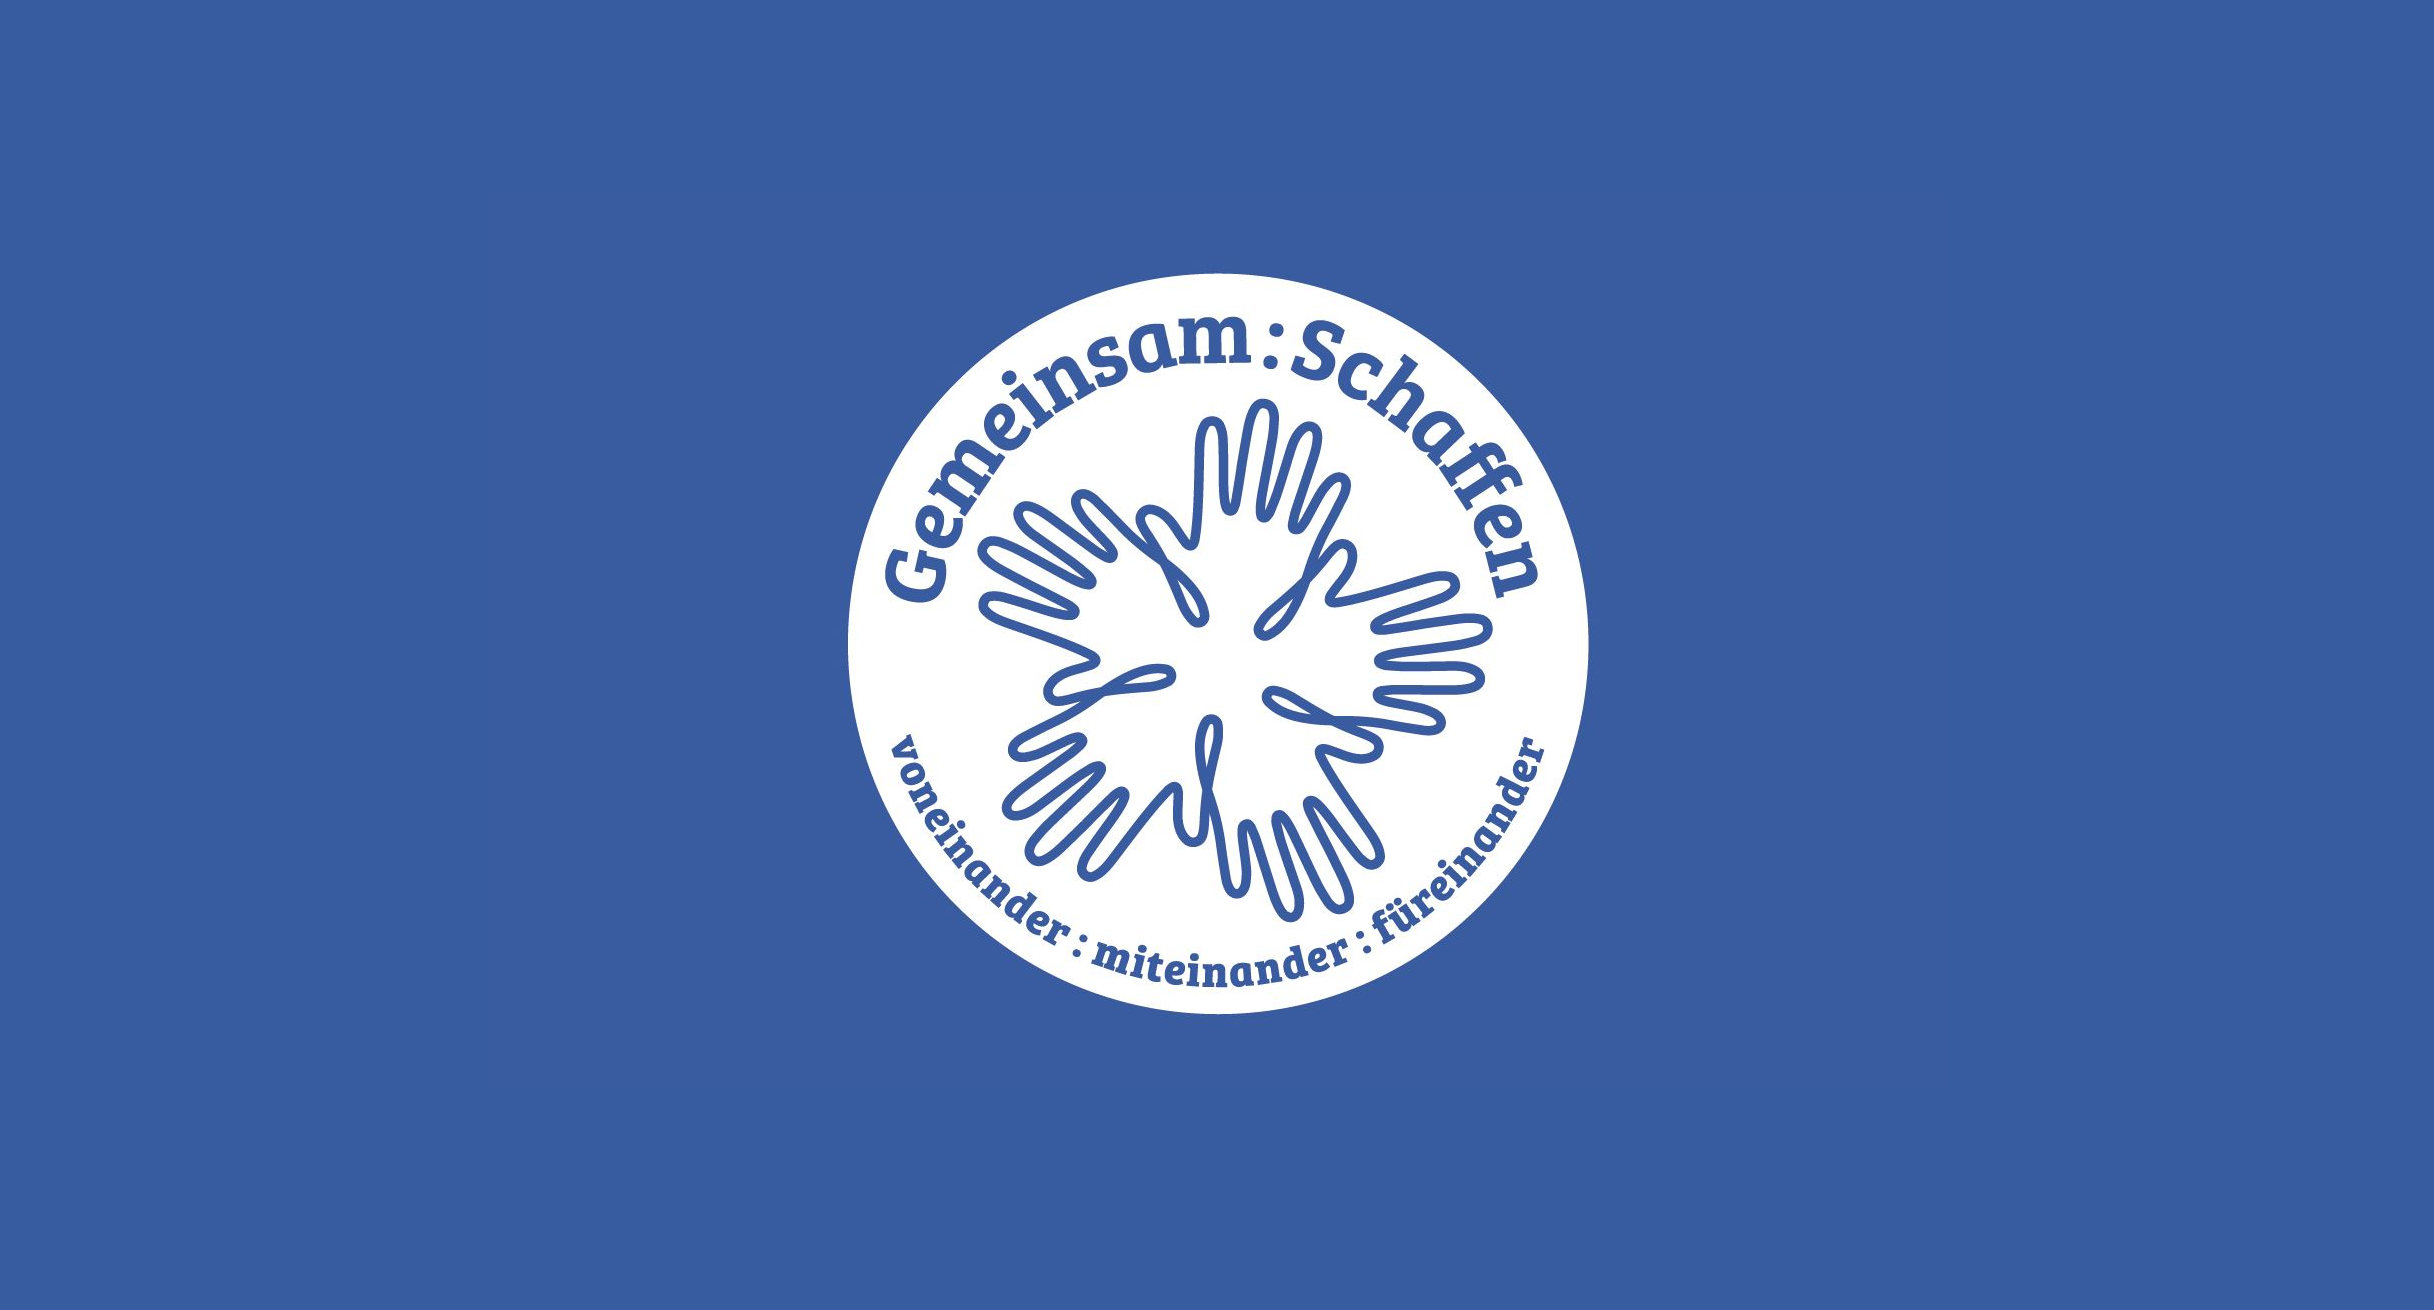 Das Wort-Bild-Logo des Ideenwettbewerbs „Gemeinsam:Schaffen“: Die Worte „Gemeinsam:Schaffen“ und „voneinander:miteinander:füreinander“ stehen mit fünf gezeichneten Händen in einem Kreis blau auf weiß geschrieben.']